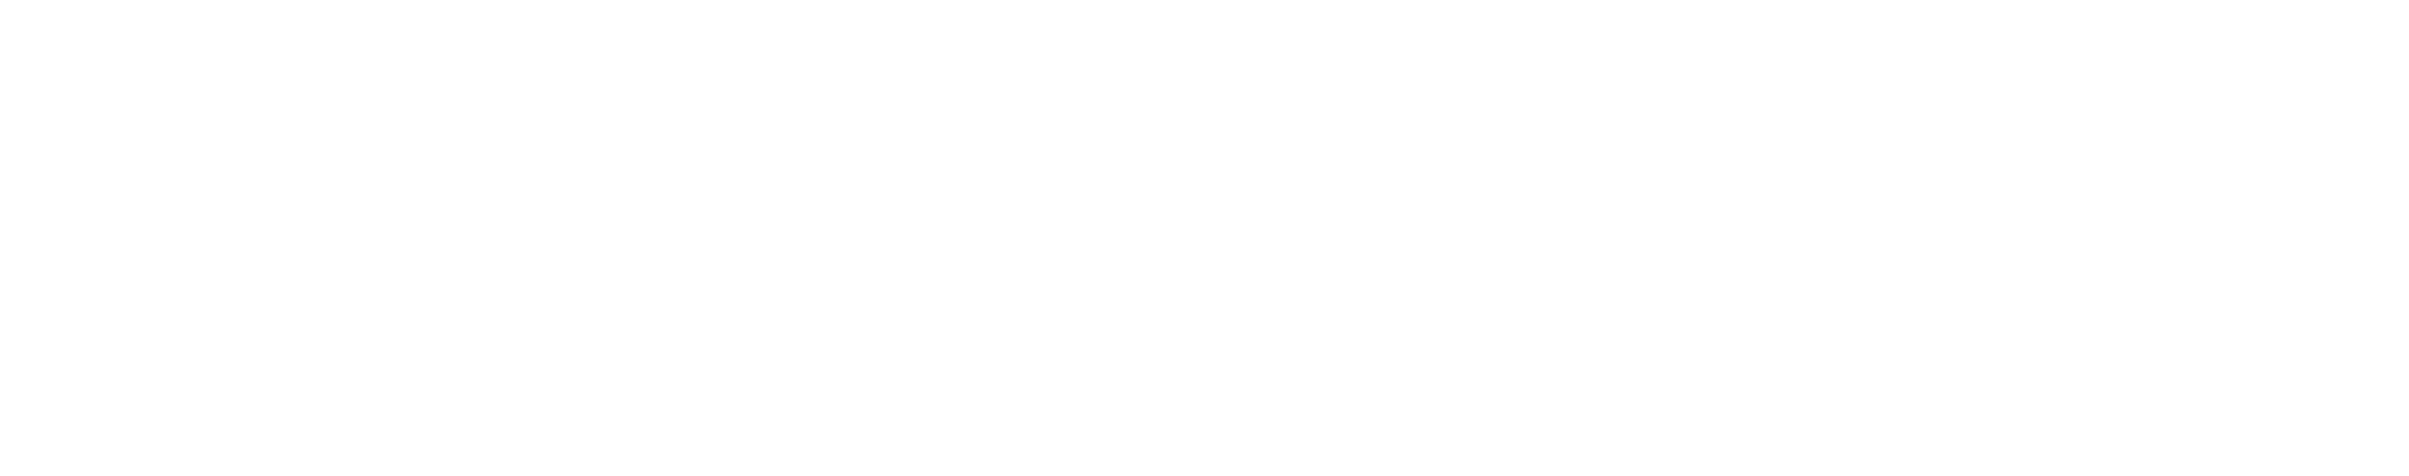 electrify-bike logo